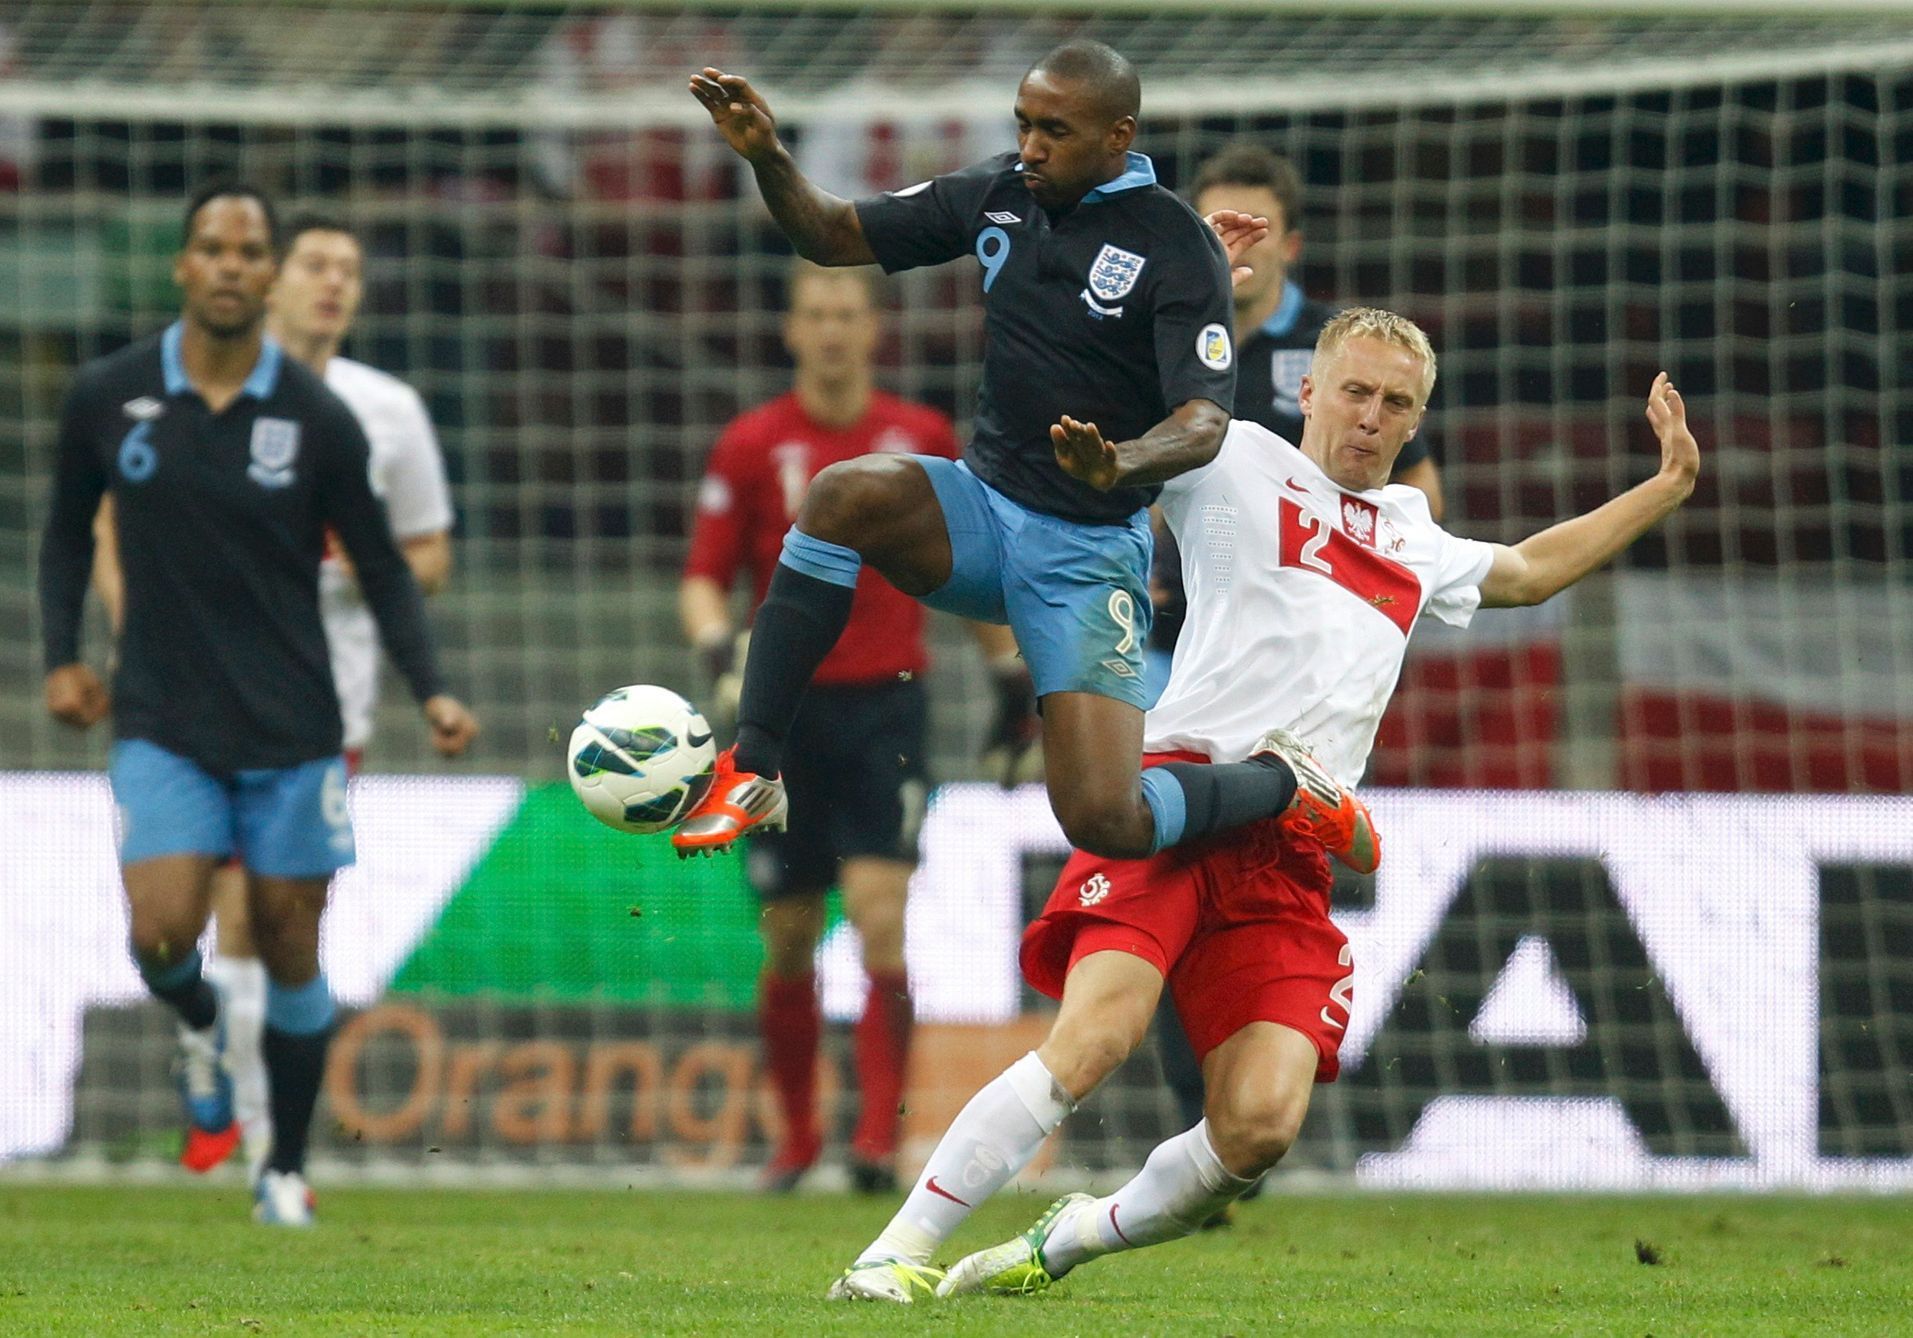 Poláci v dohrávce odloženého utkání kvalifikace na MS 2014 remizovali s Anglií 1:1